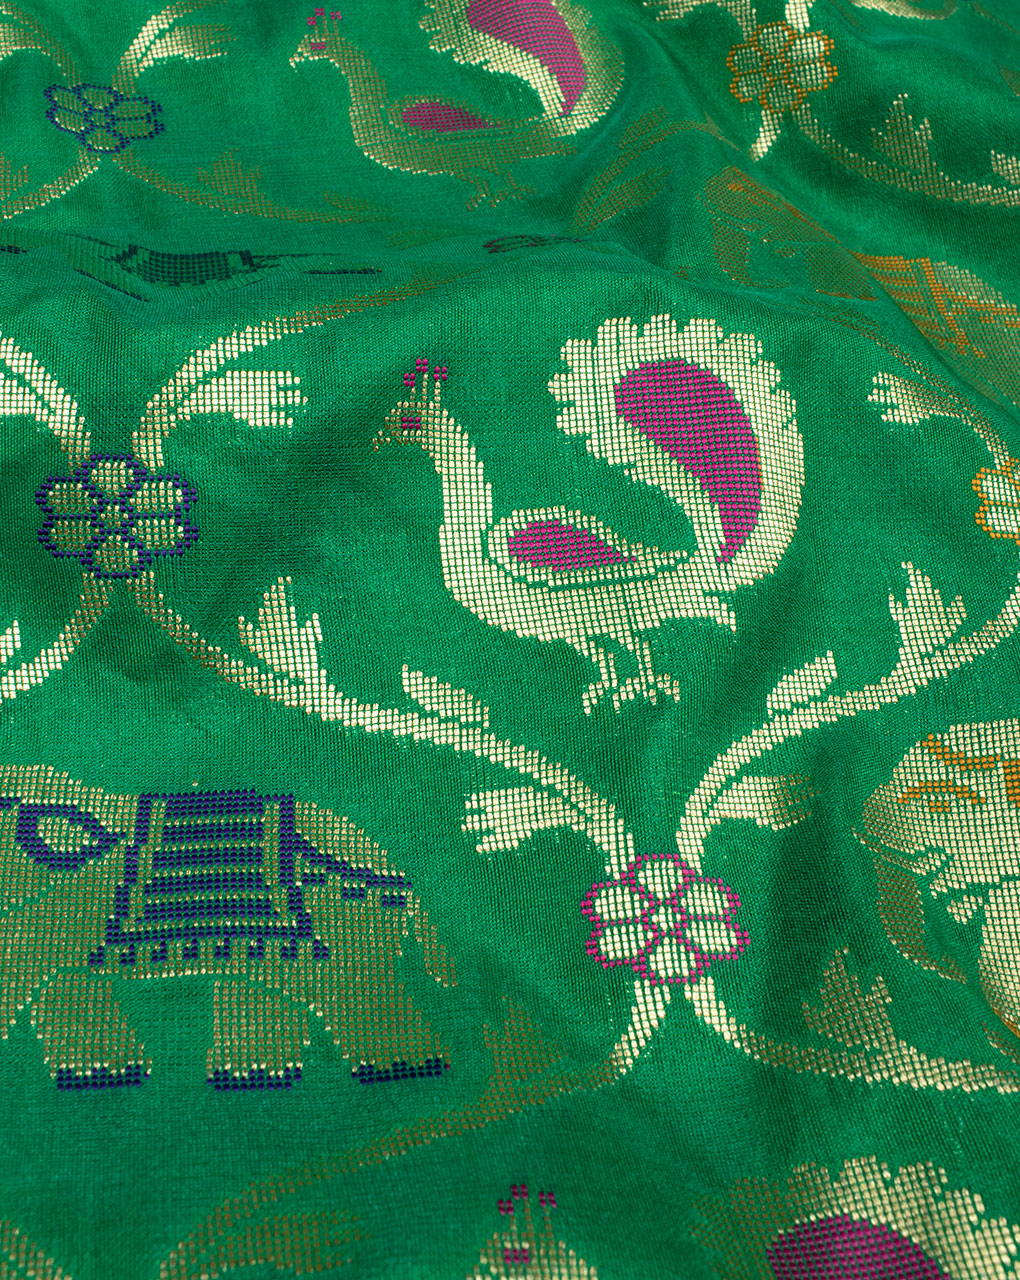 Green Gold Creature Print Zari Jacqurad Banarasi Taffeta Silk Fabric - Fabriclore.com